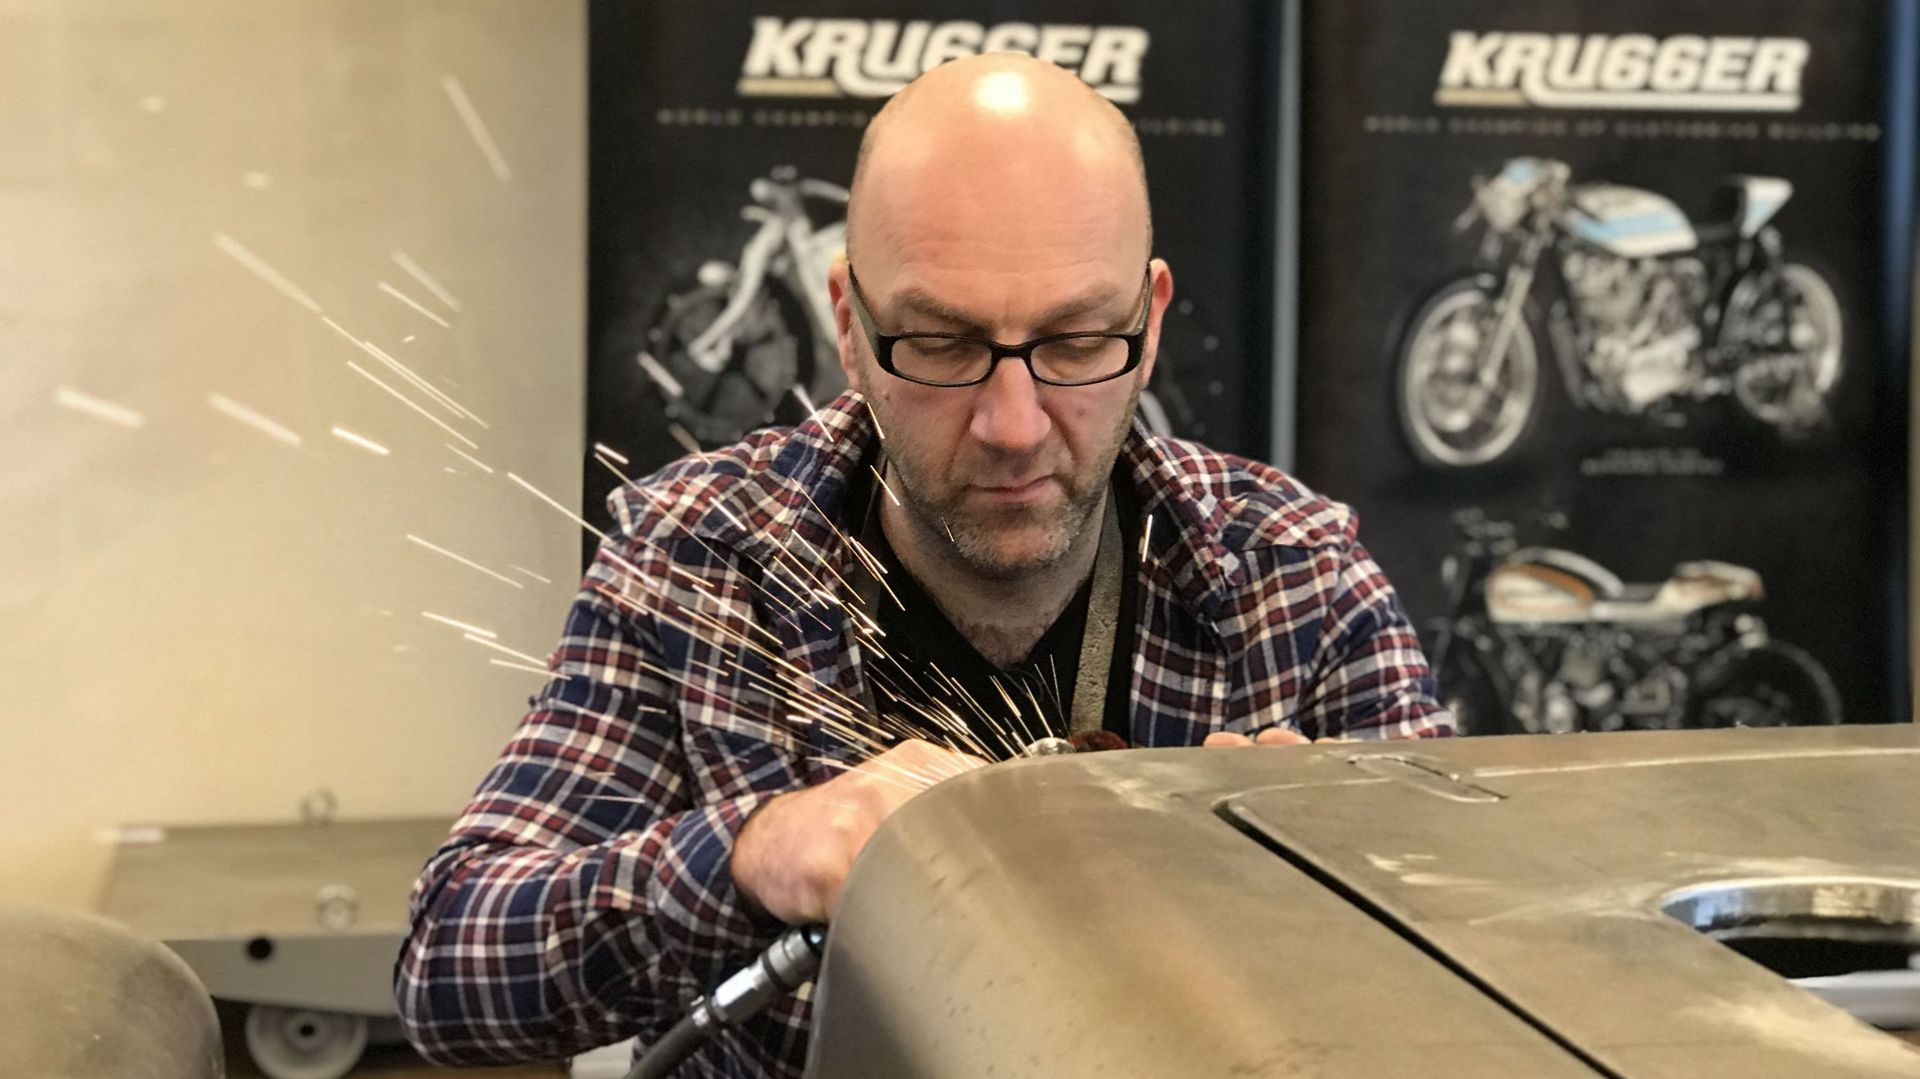 Fred Krugger travaille depuis avril 2017 sur une voiture d'exception